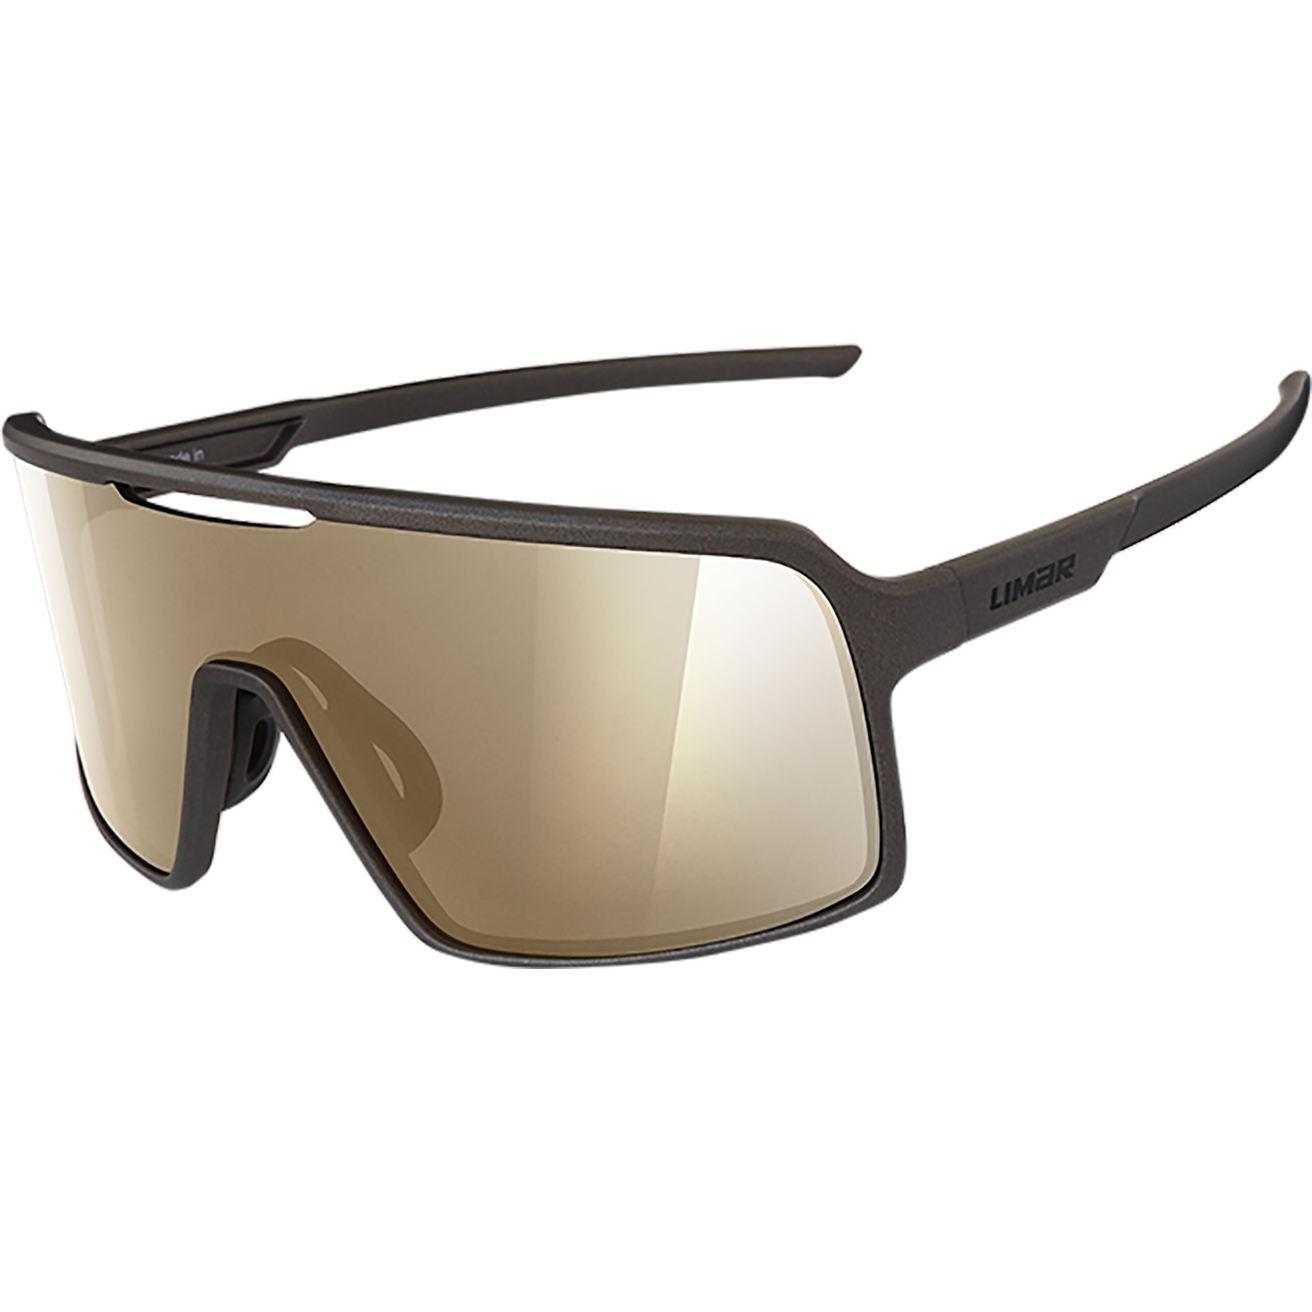 Productfoto van Limar Argo Cycling Glasses - Matt Titanium Gold